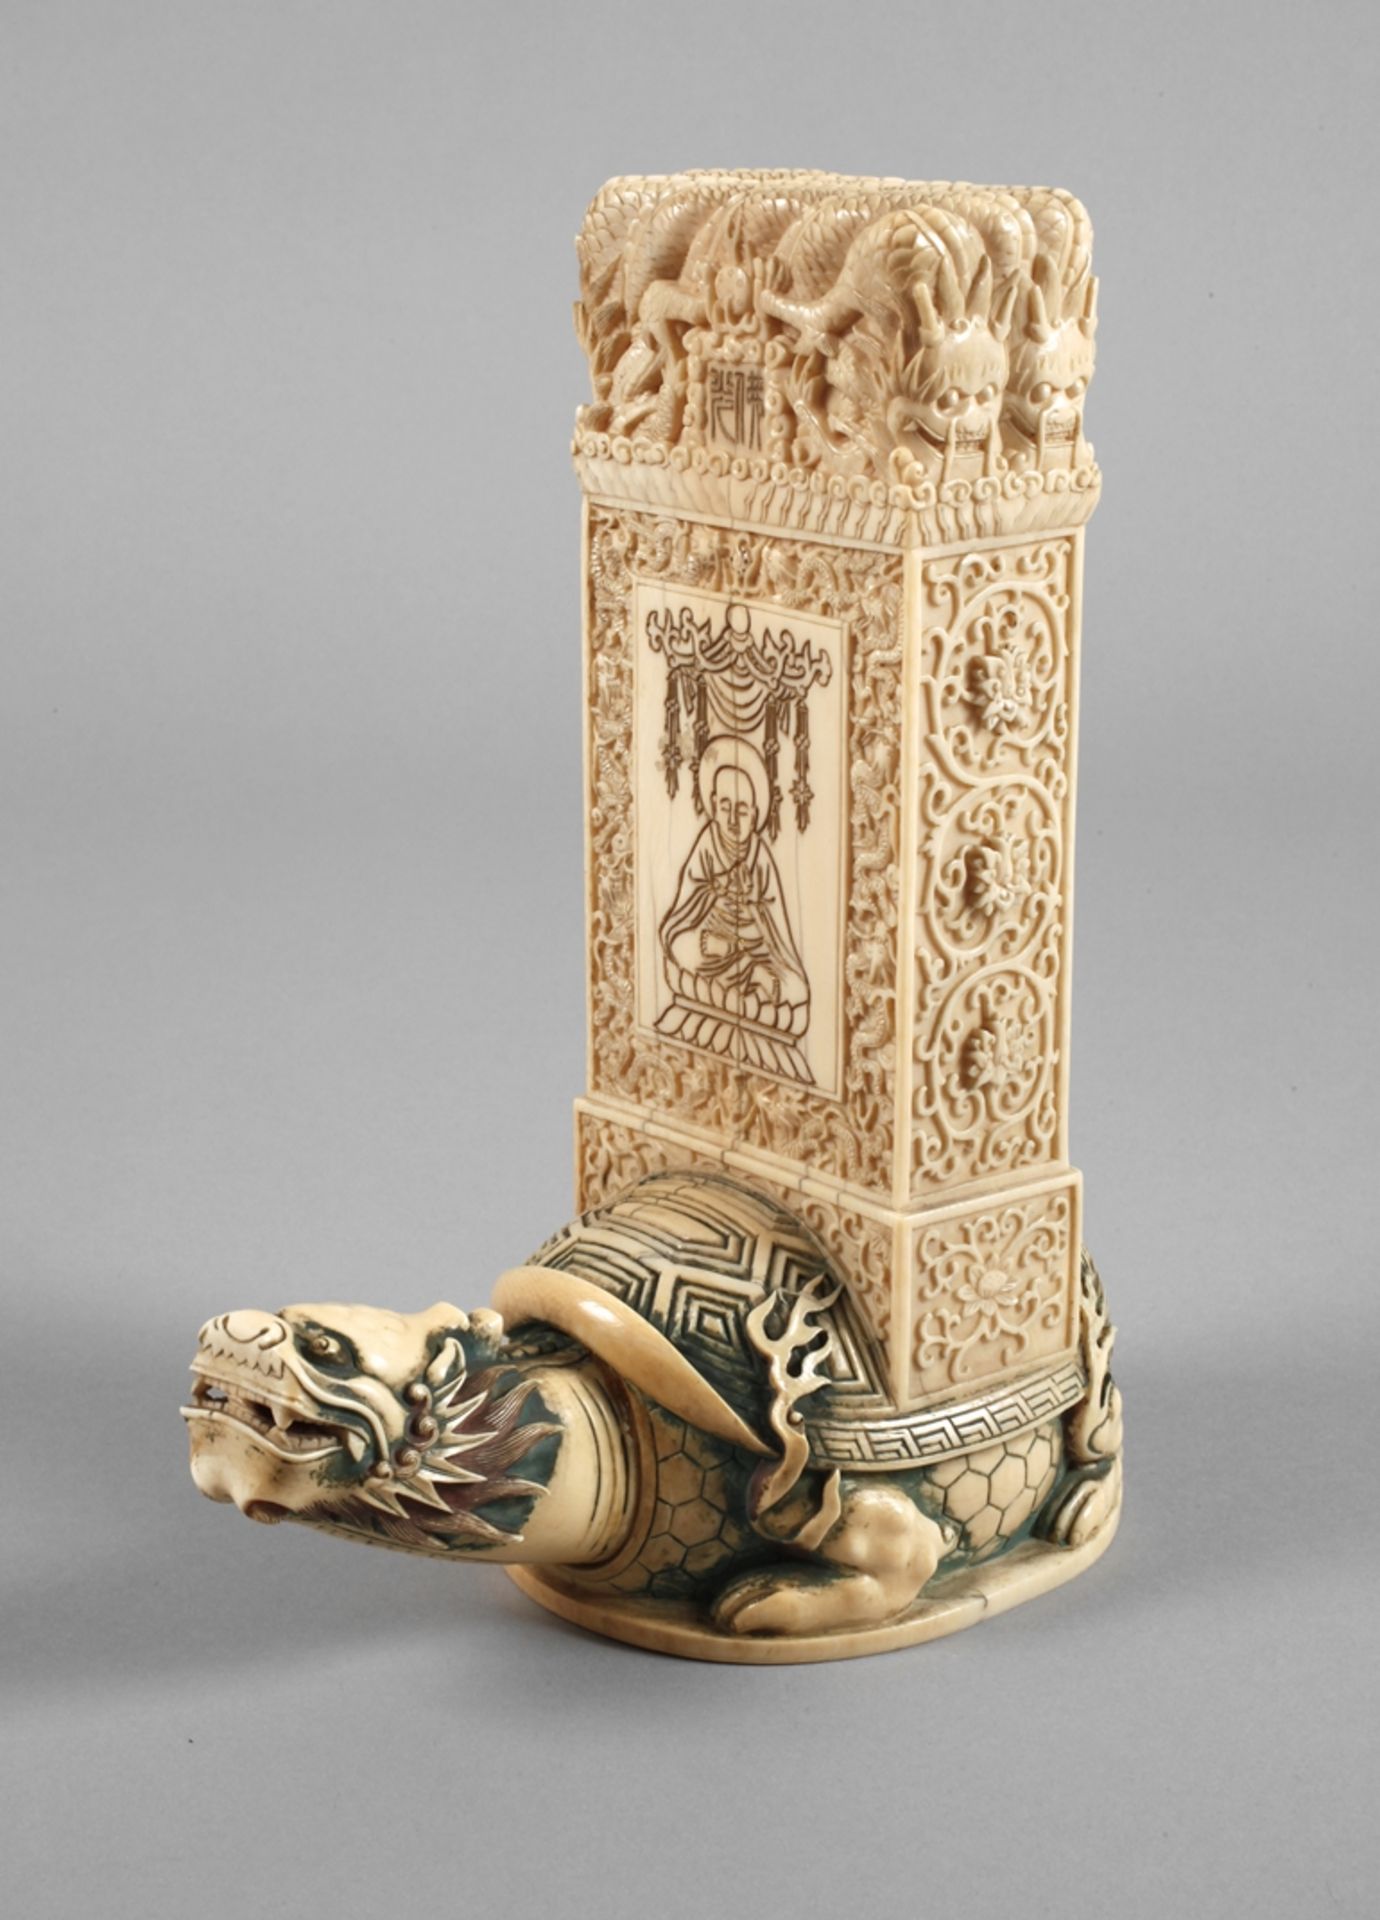 Miniature stele of ivory